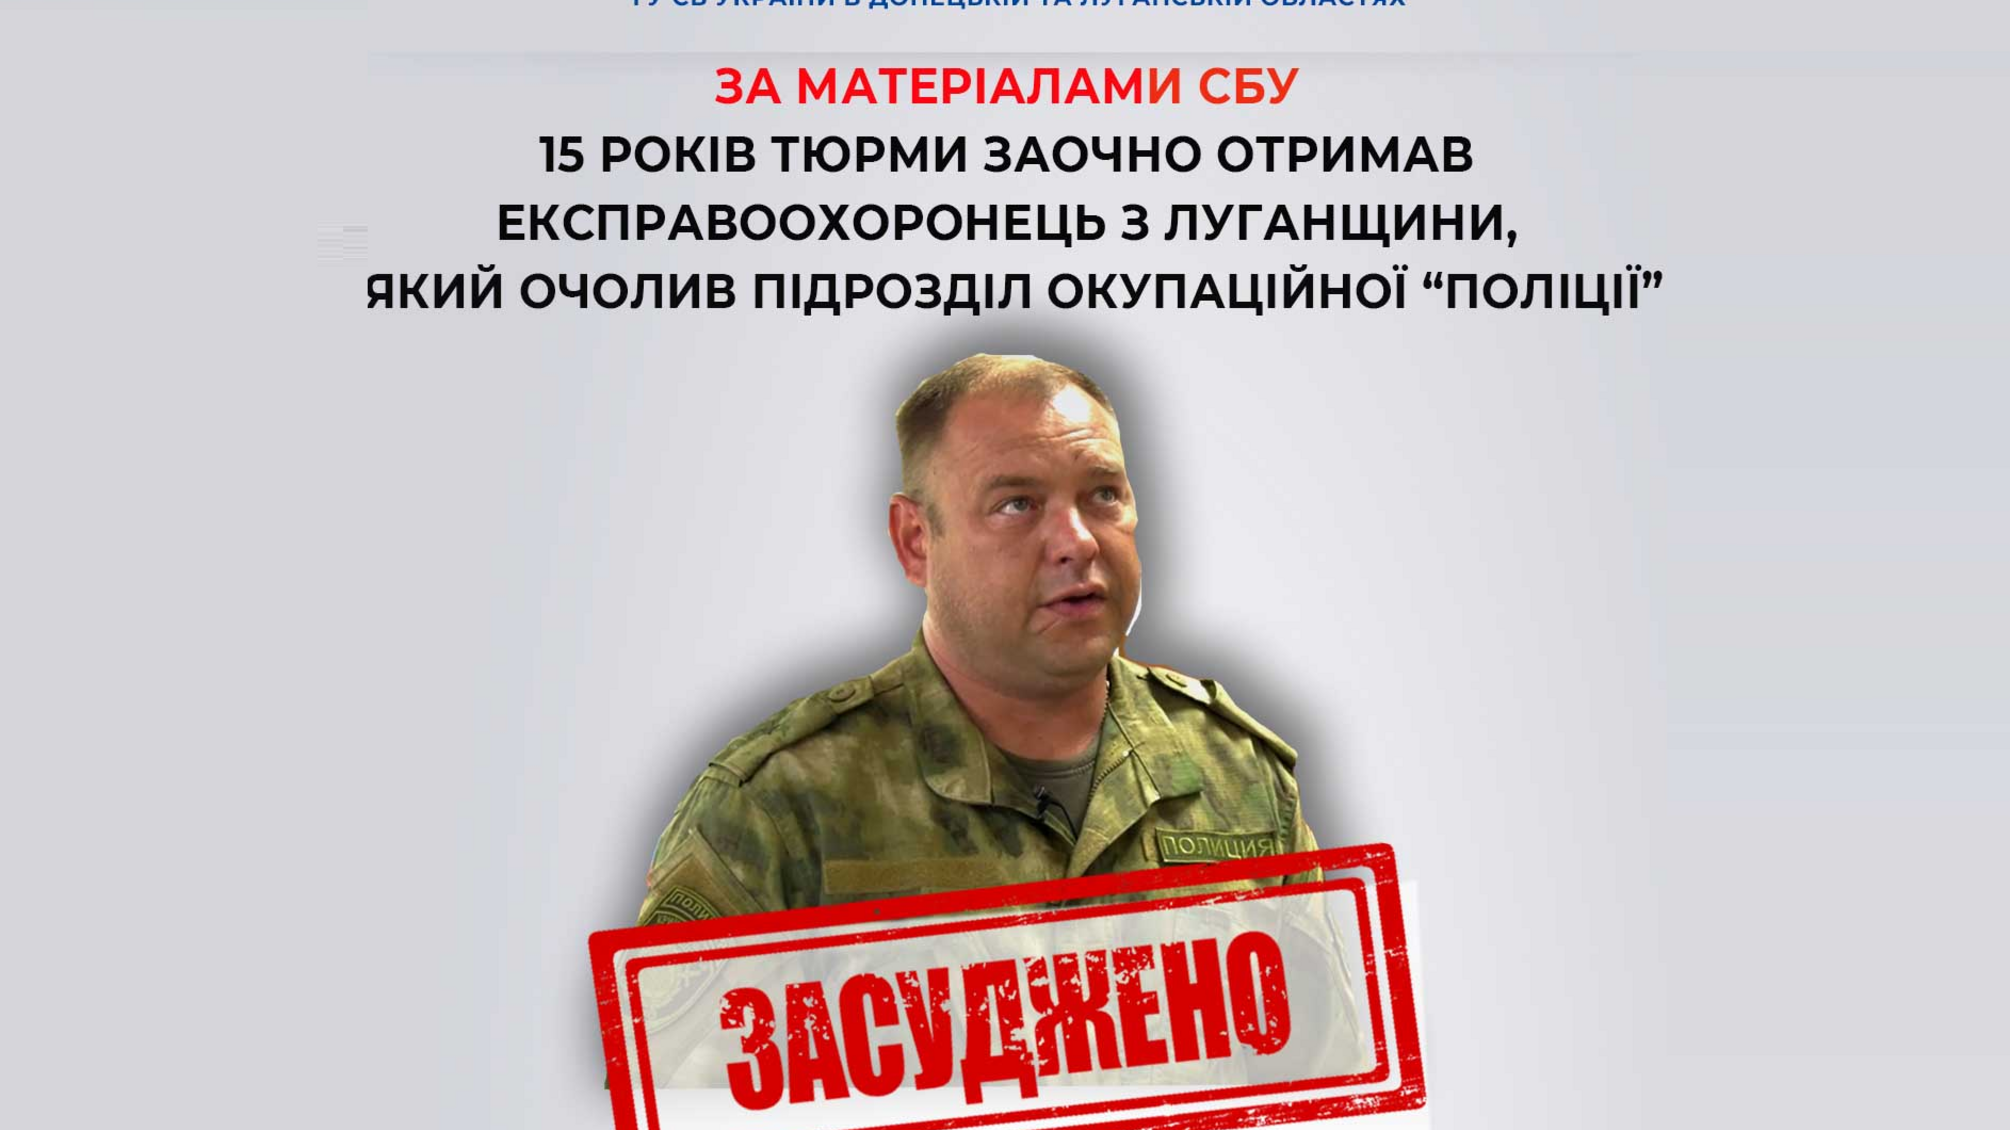 Експравоохоронця, який очолив підрозділ окупаційної 'поліції' на Луганщині, засудили на 15 років заочно